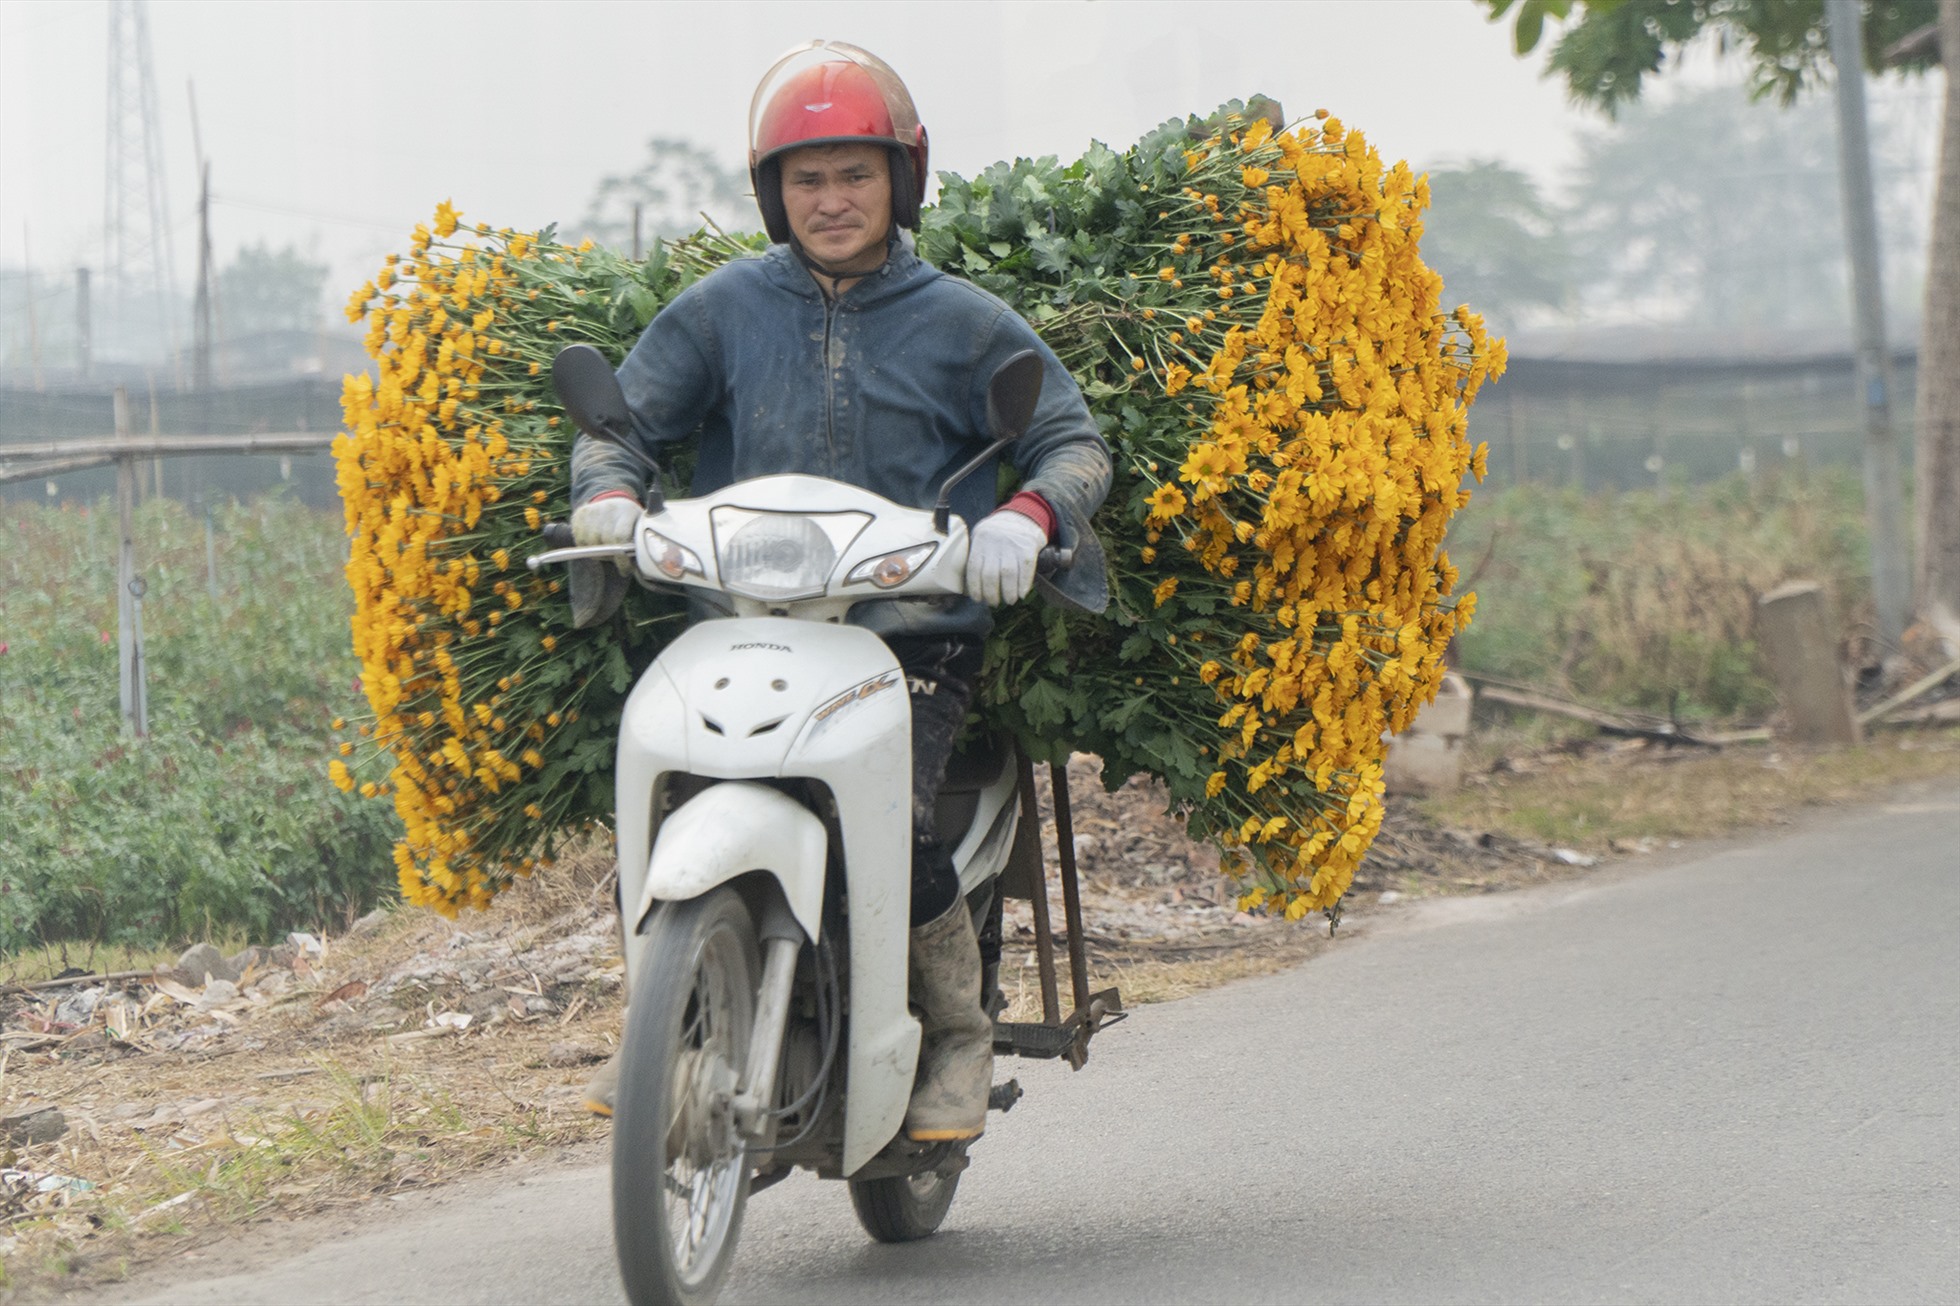 Bên cạnh cung cấp hoa cho thủ đô Hà Nội, hoa còn được bán các tỉnh phía Bắc như Hải Dương, Hải Phòng, Quảng Ninh,... Có năm hoa được mang vào các tỉnh miền Nam”.